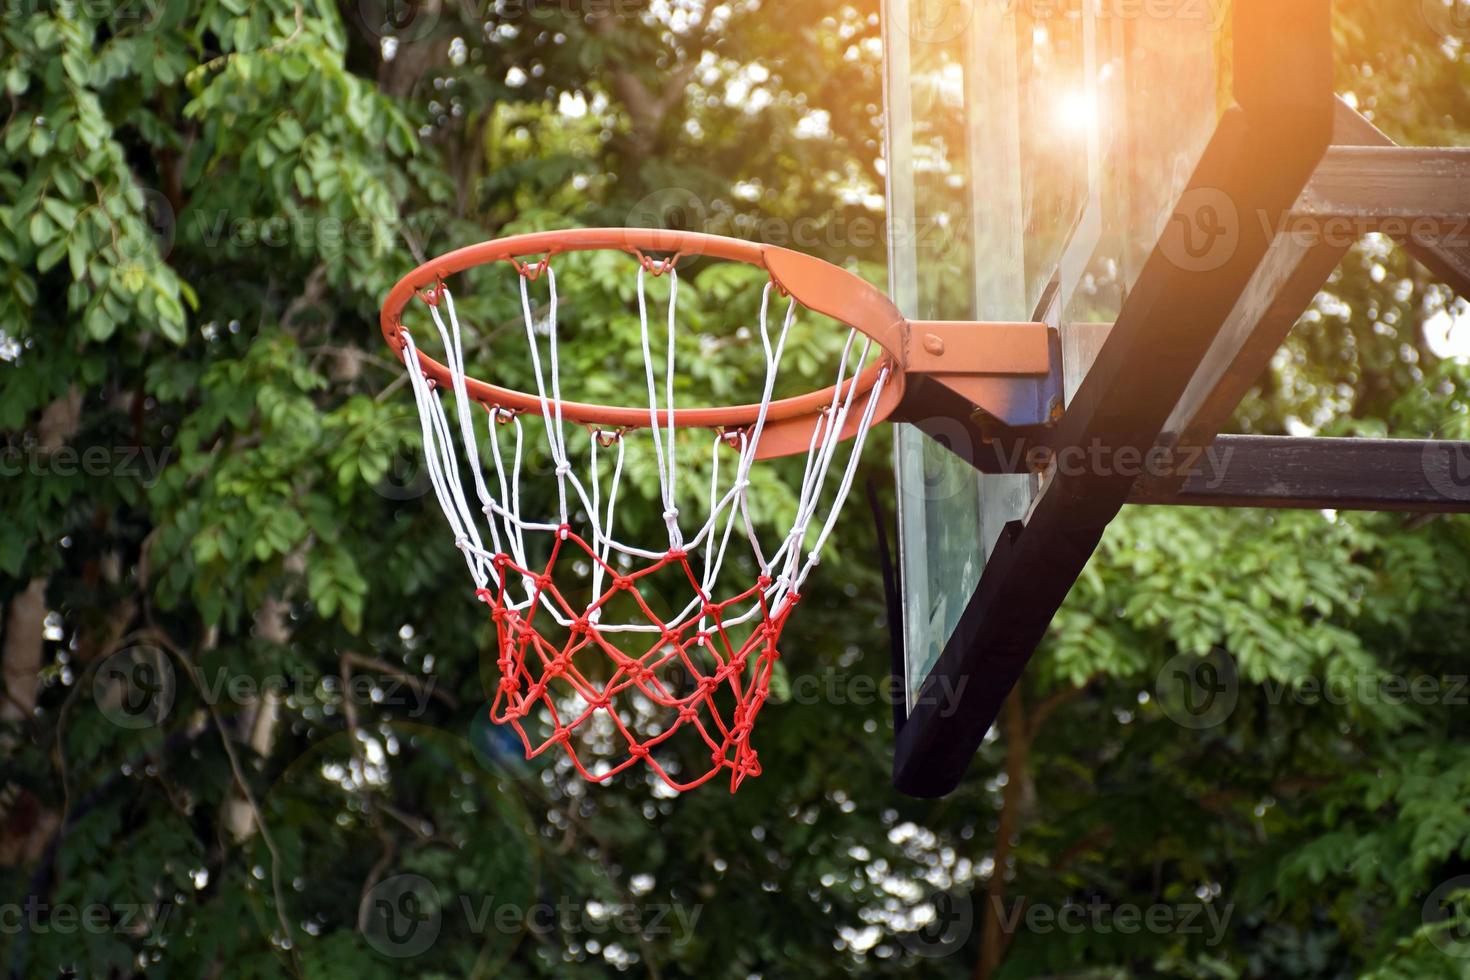 cesta de basquete no alvo de tiro ao ar livre, fundo desfocado e luz solar editado. foco suave e seletivo na cesta de basquete. foto